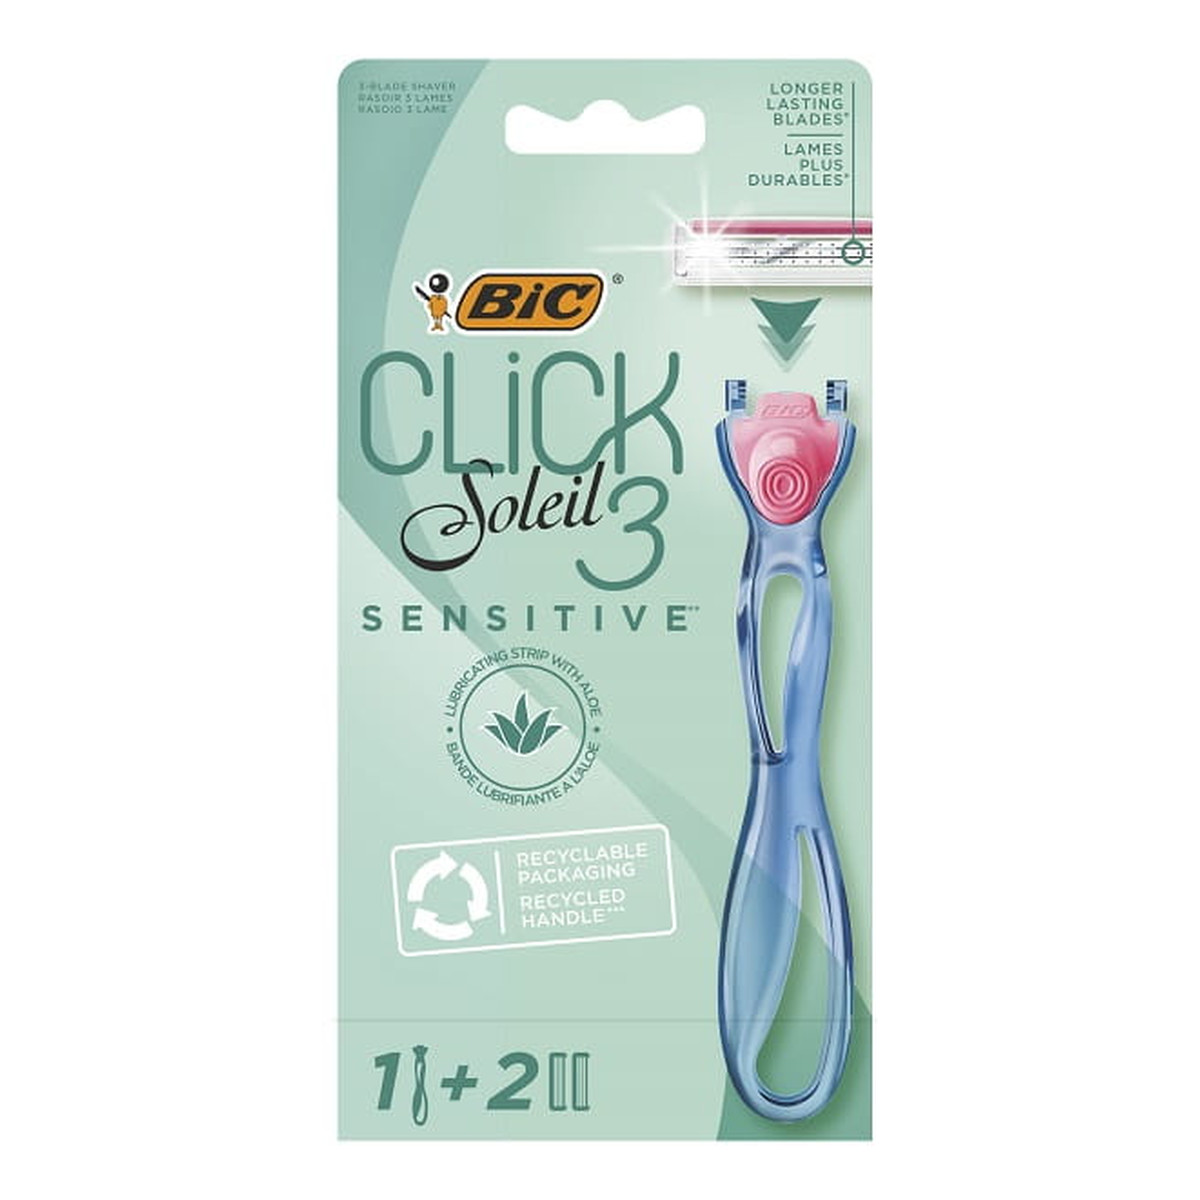 Bic Soleil 3 Click Sensitive Maszynka do golenia damska 1 szt + wymienne wkłady